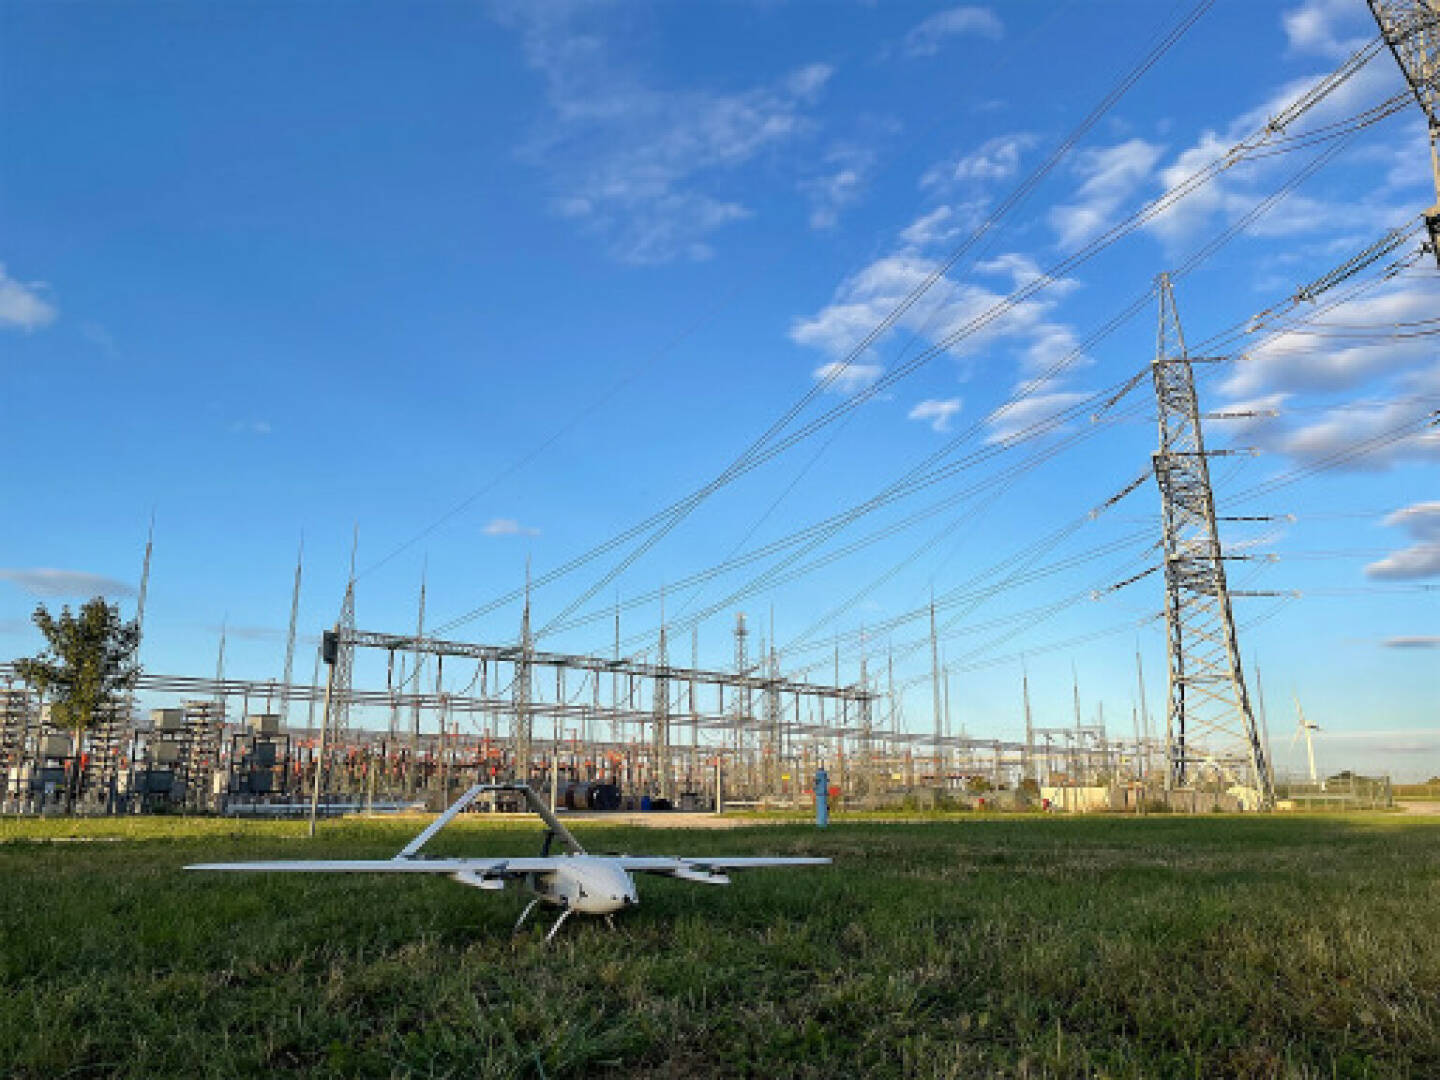 Austrian Power Grid: Erster europäischer unbemannter und automatisierter Drohnenflug bei Nacht außerhalb der Sicht über 100 Kilometer; Credit: APG/CaroBurger